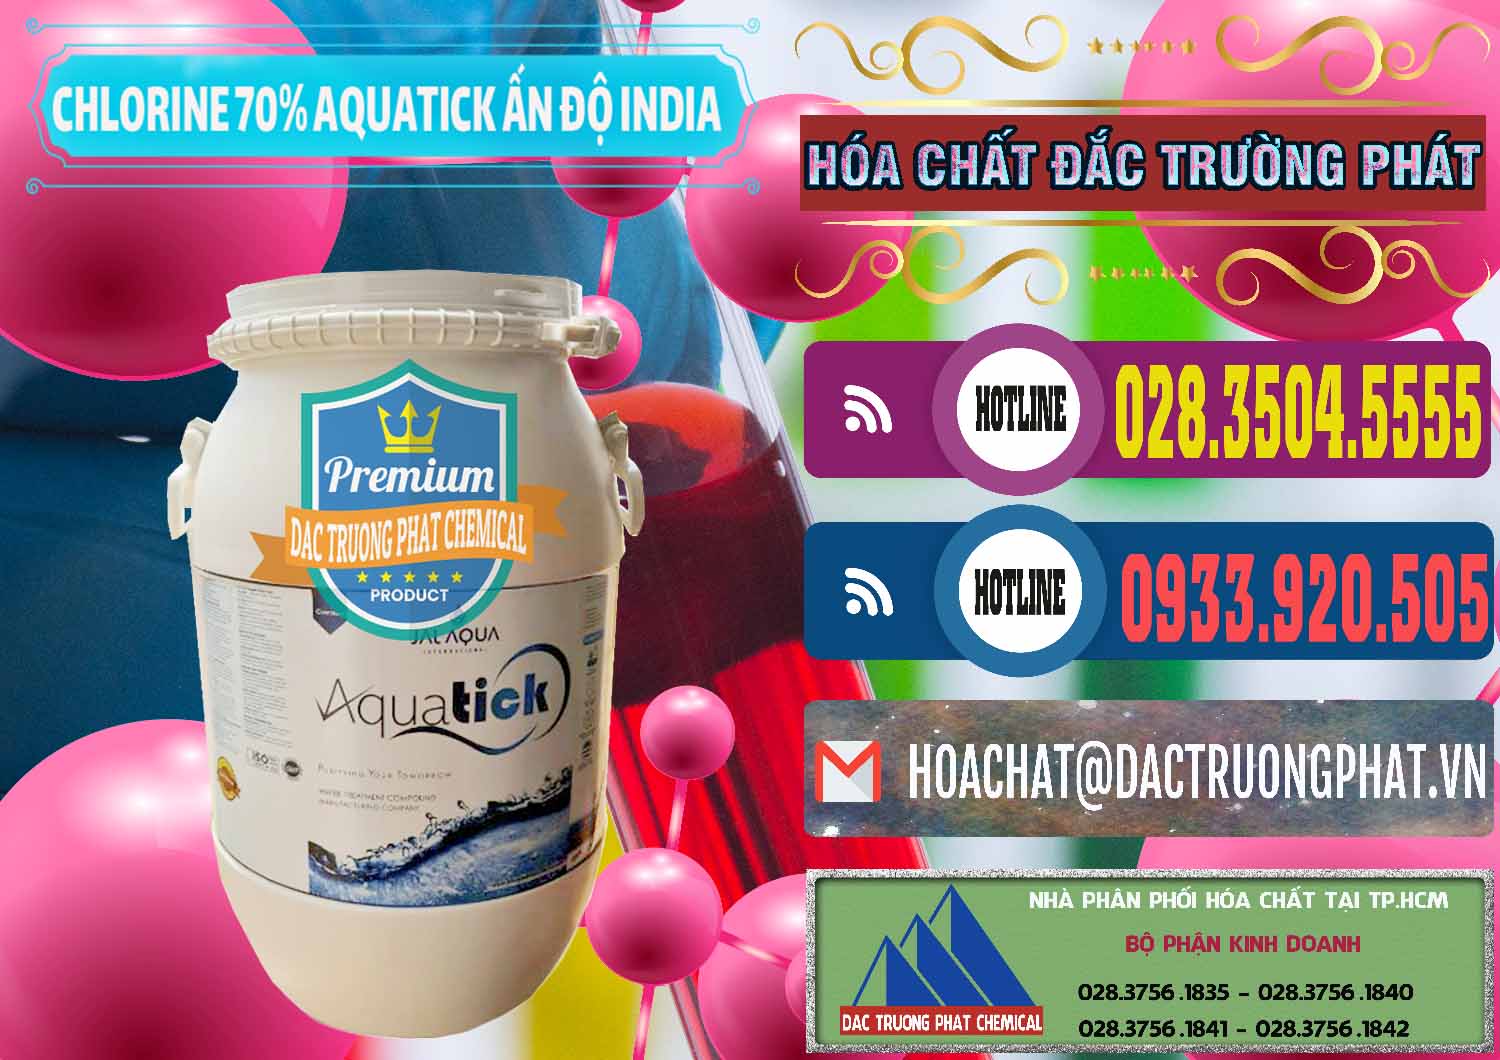 Nơi cung cấp _ bán Chlorine – Clorin 70% Aquatick Jal Aqua Ấn Độ India - 0215 - Đơn vị phân phối & bán hóa chất tại TP.HCM - muabanhoachat.com.vn